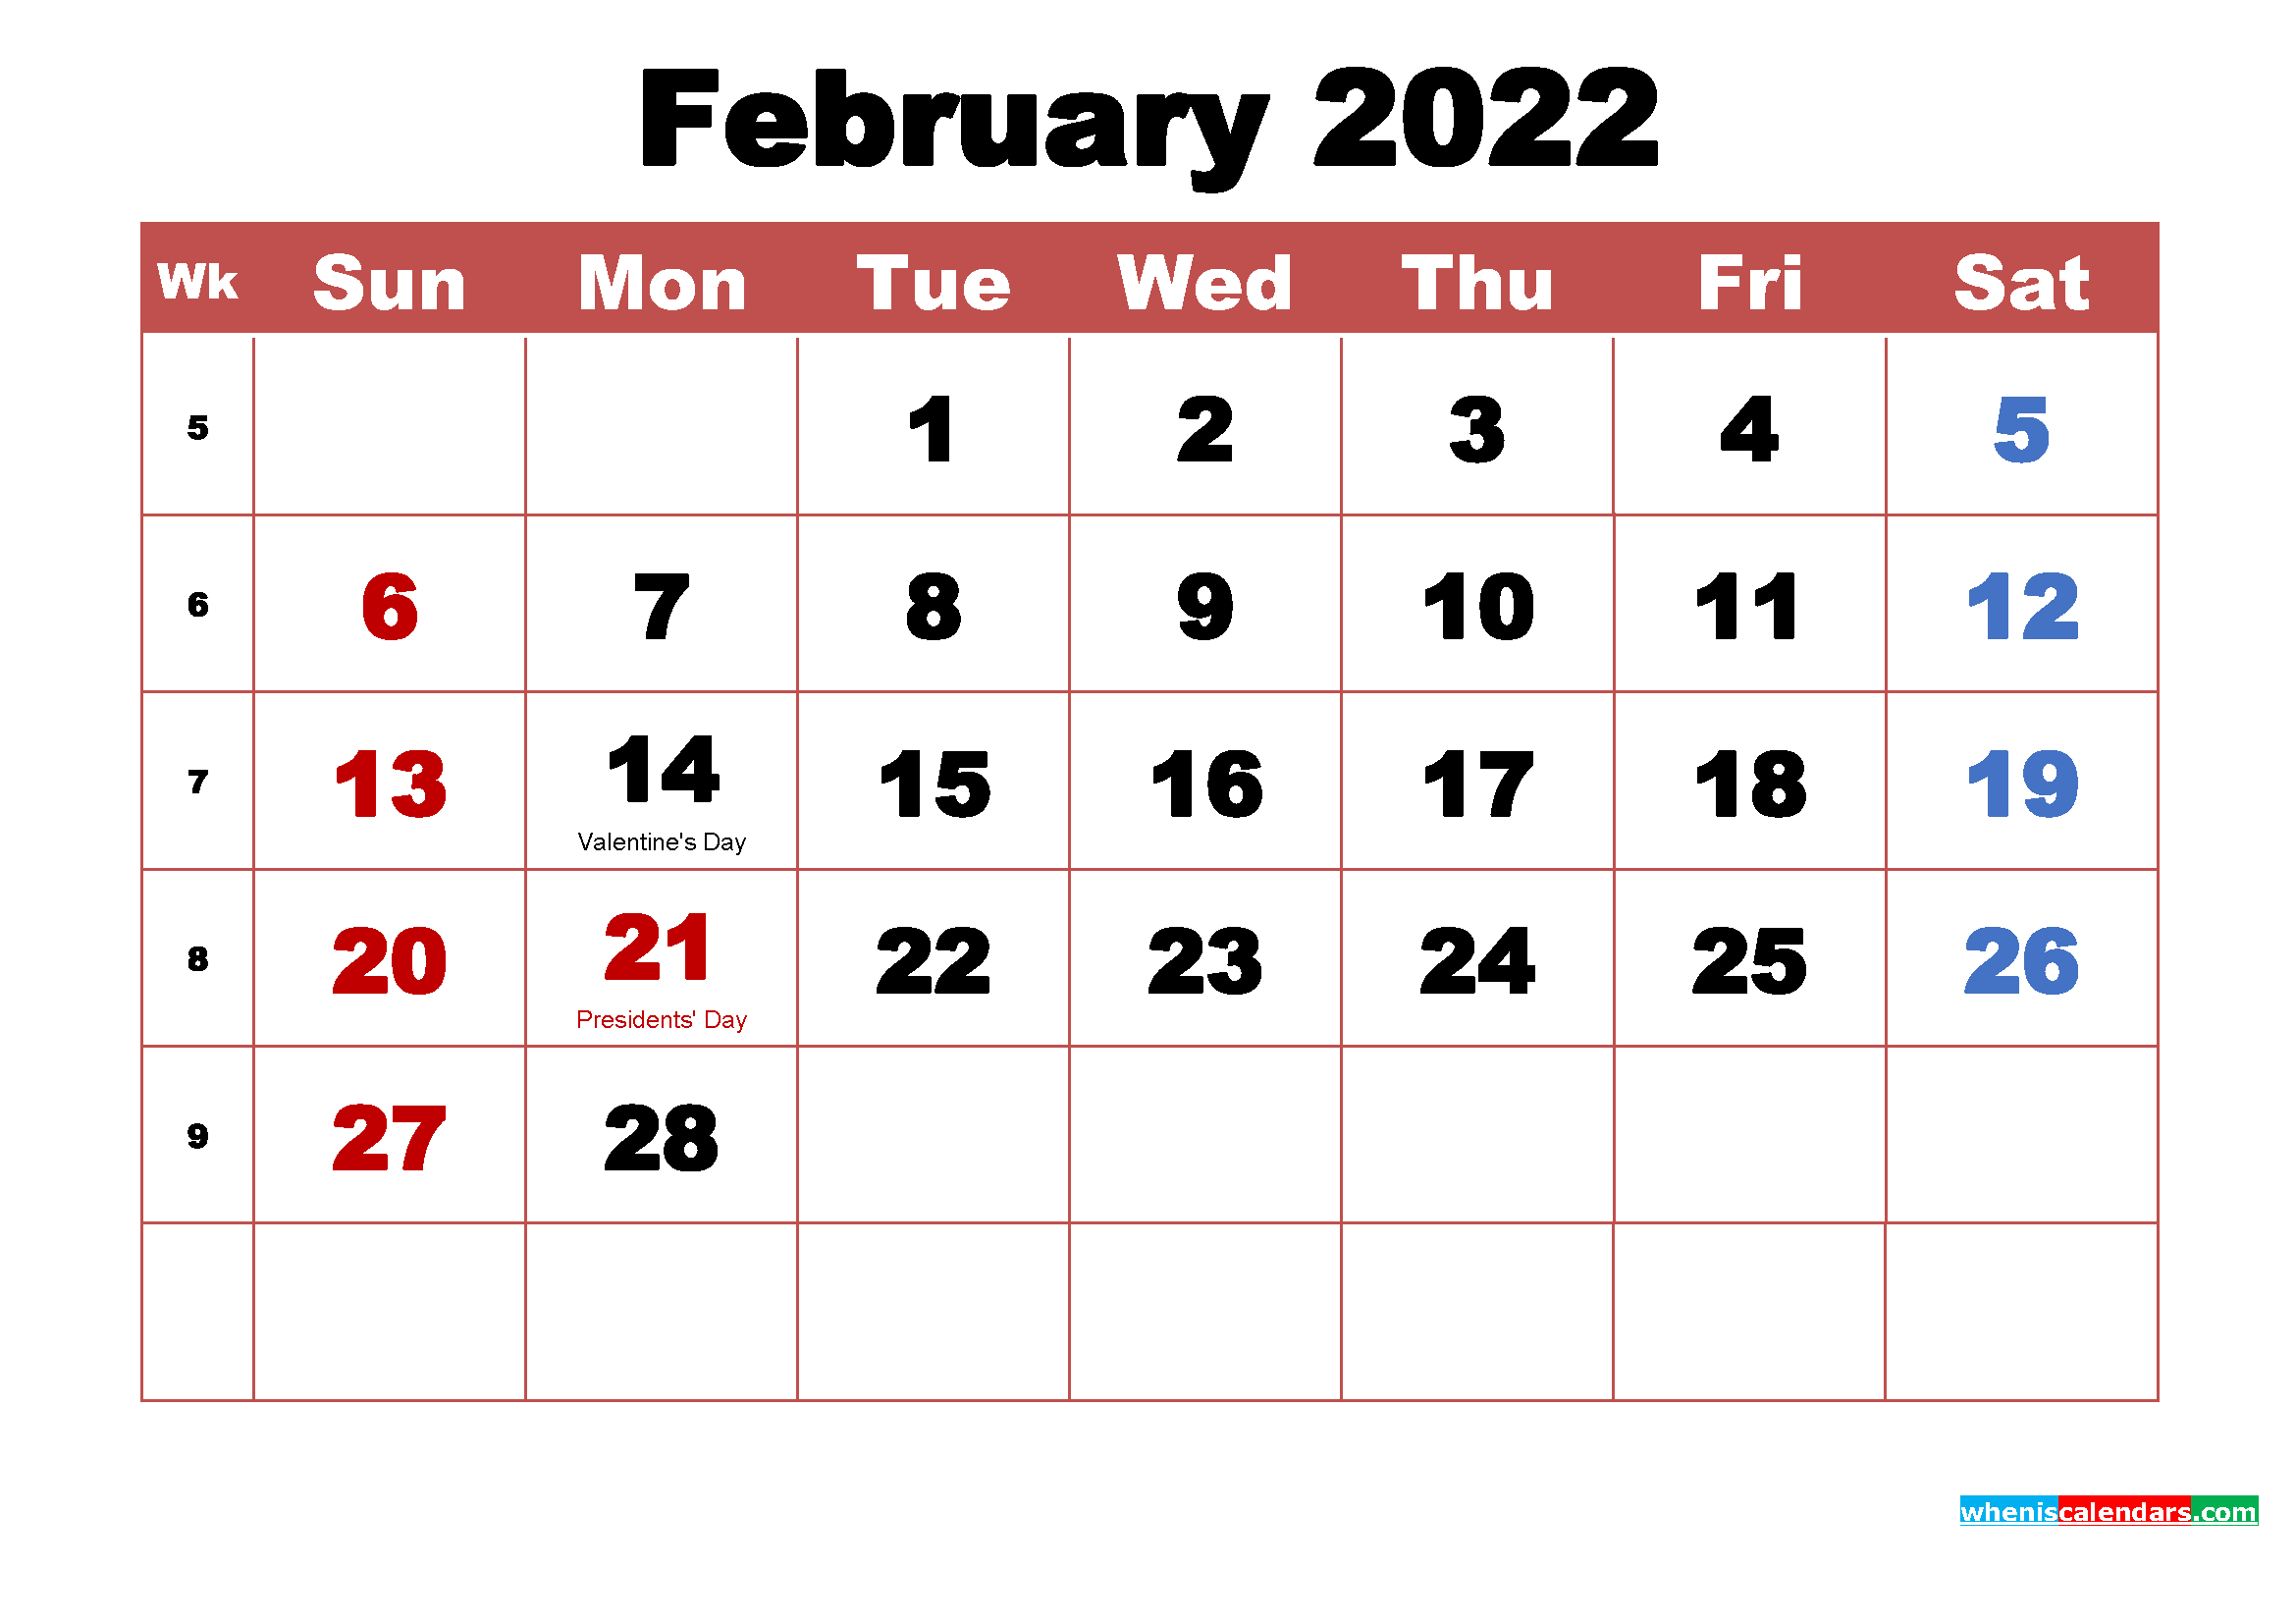 February Calendar Wallpaper High Resolution